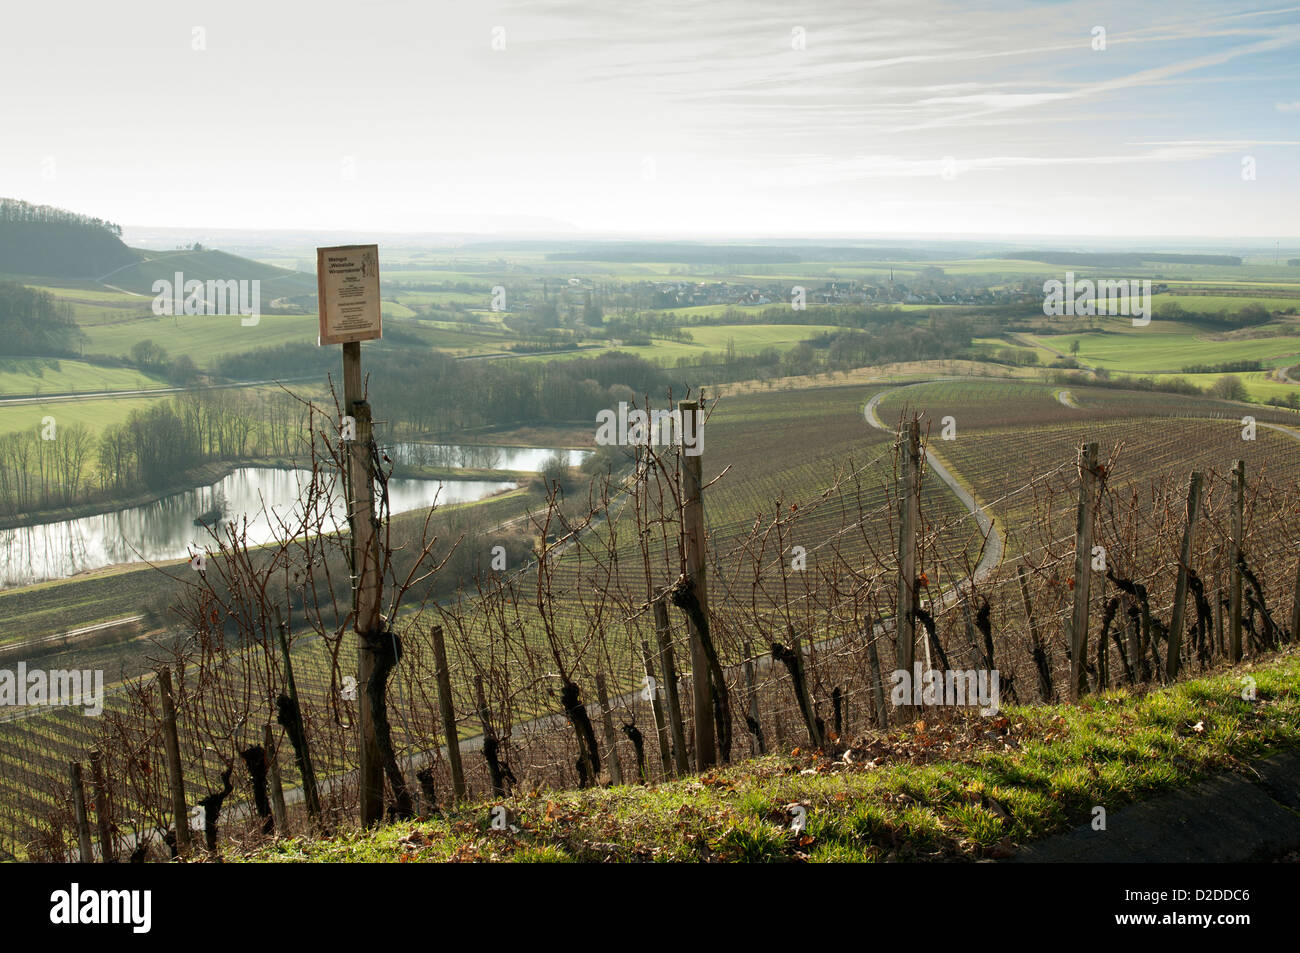 Franconian vineyard near Oberschwarzach in winter, Germany. Stock Photo